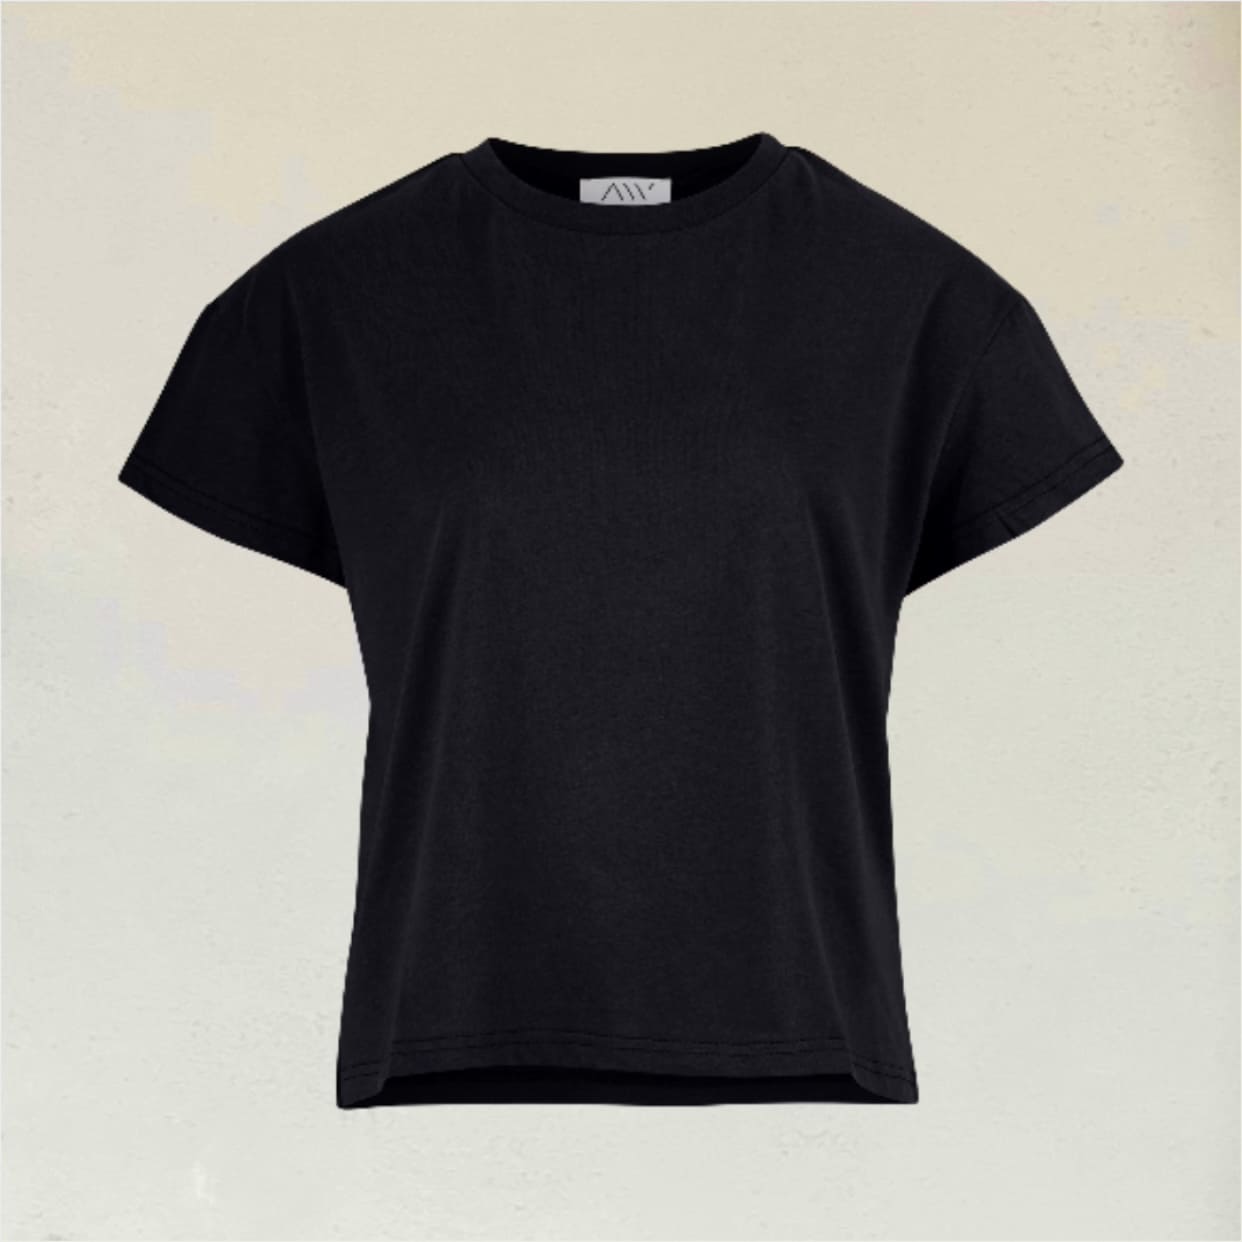 Schwarzes kurz geschnittenes T-Shirt vor beigem Hintergrund